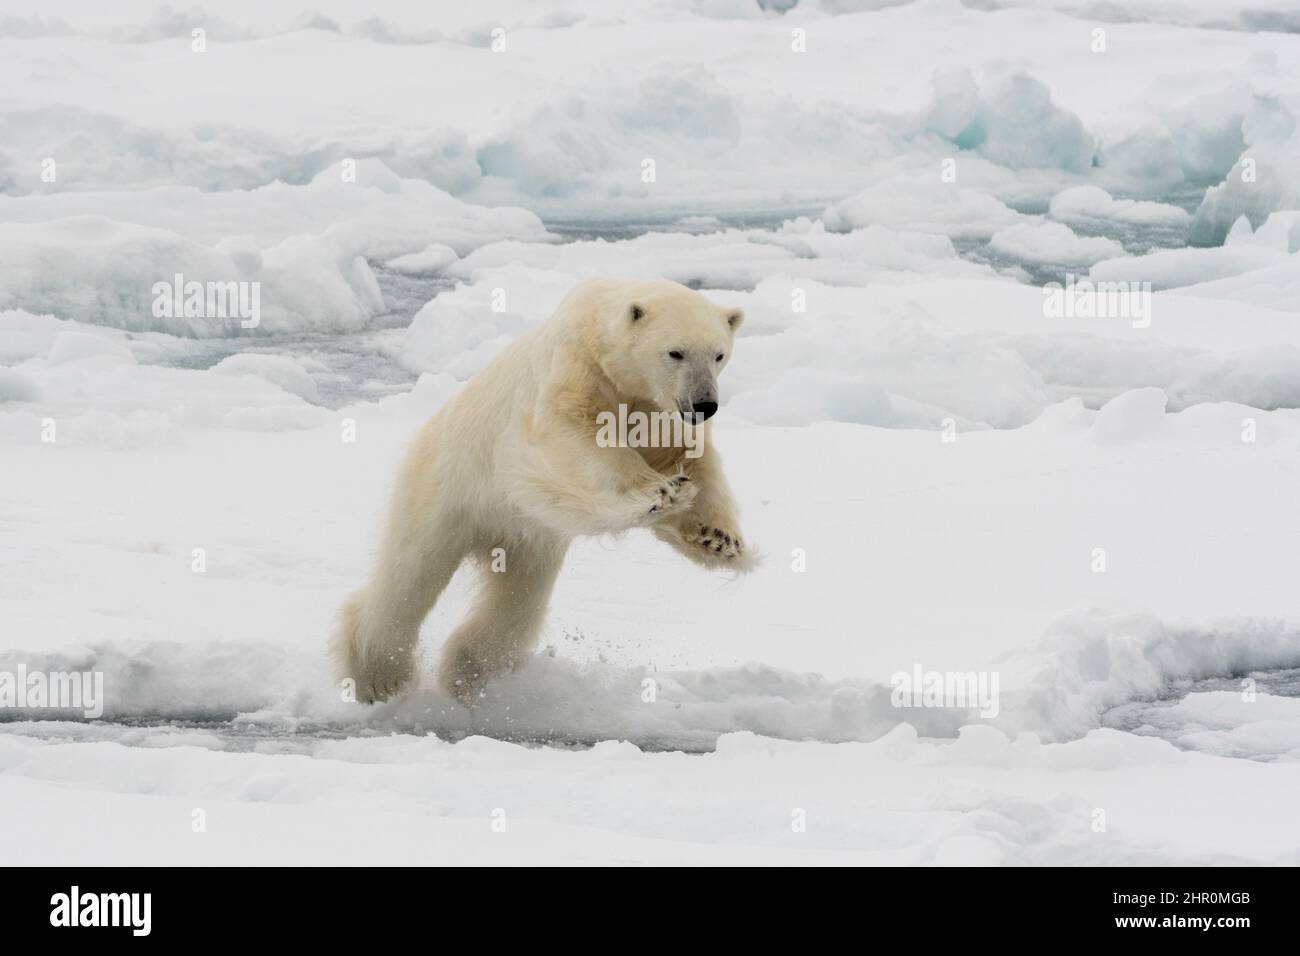 A polar bear mid-leap, Ursus maritimus. North polar ice cap, Arctic ocean Stock Photo